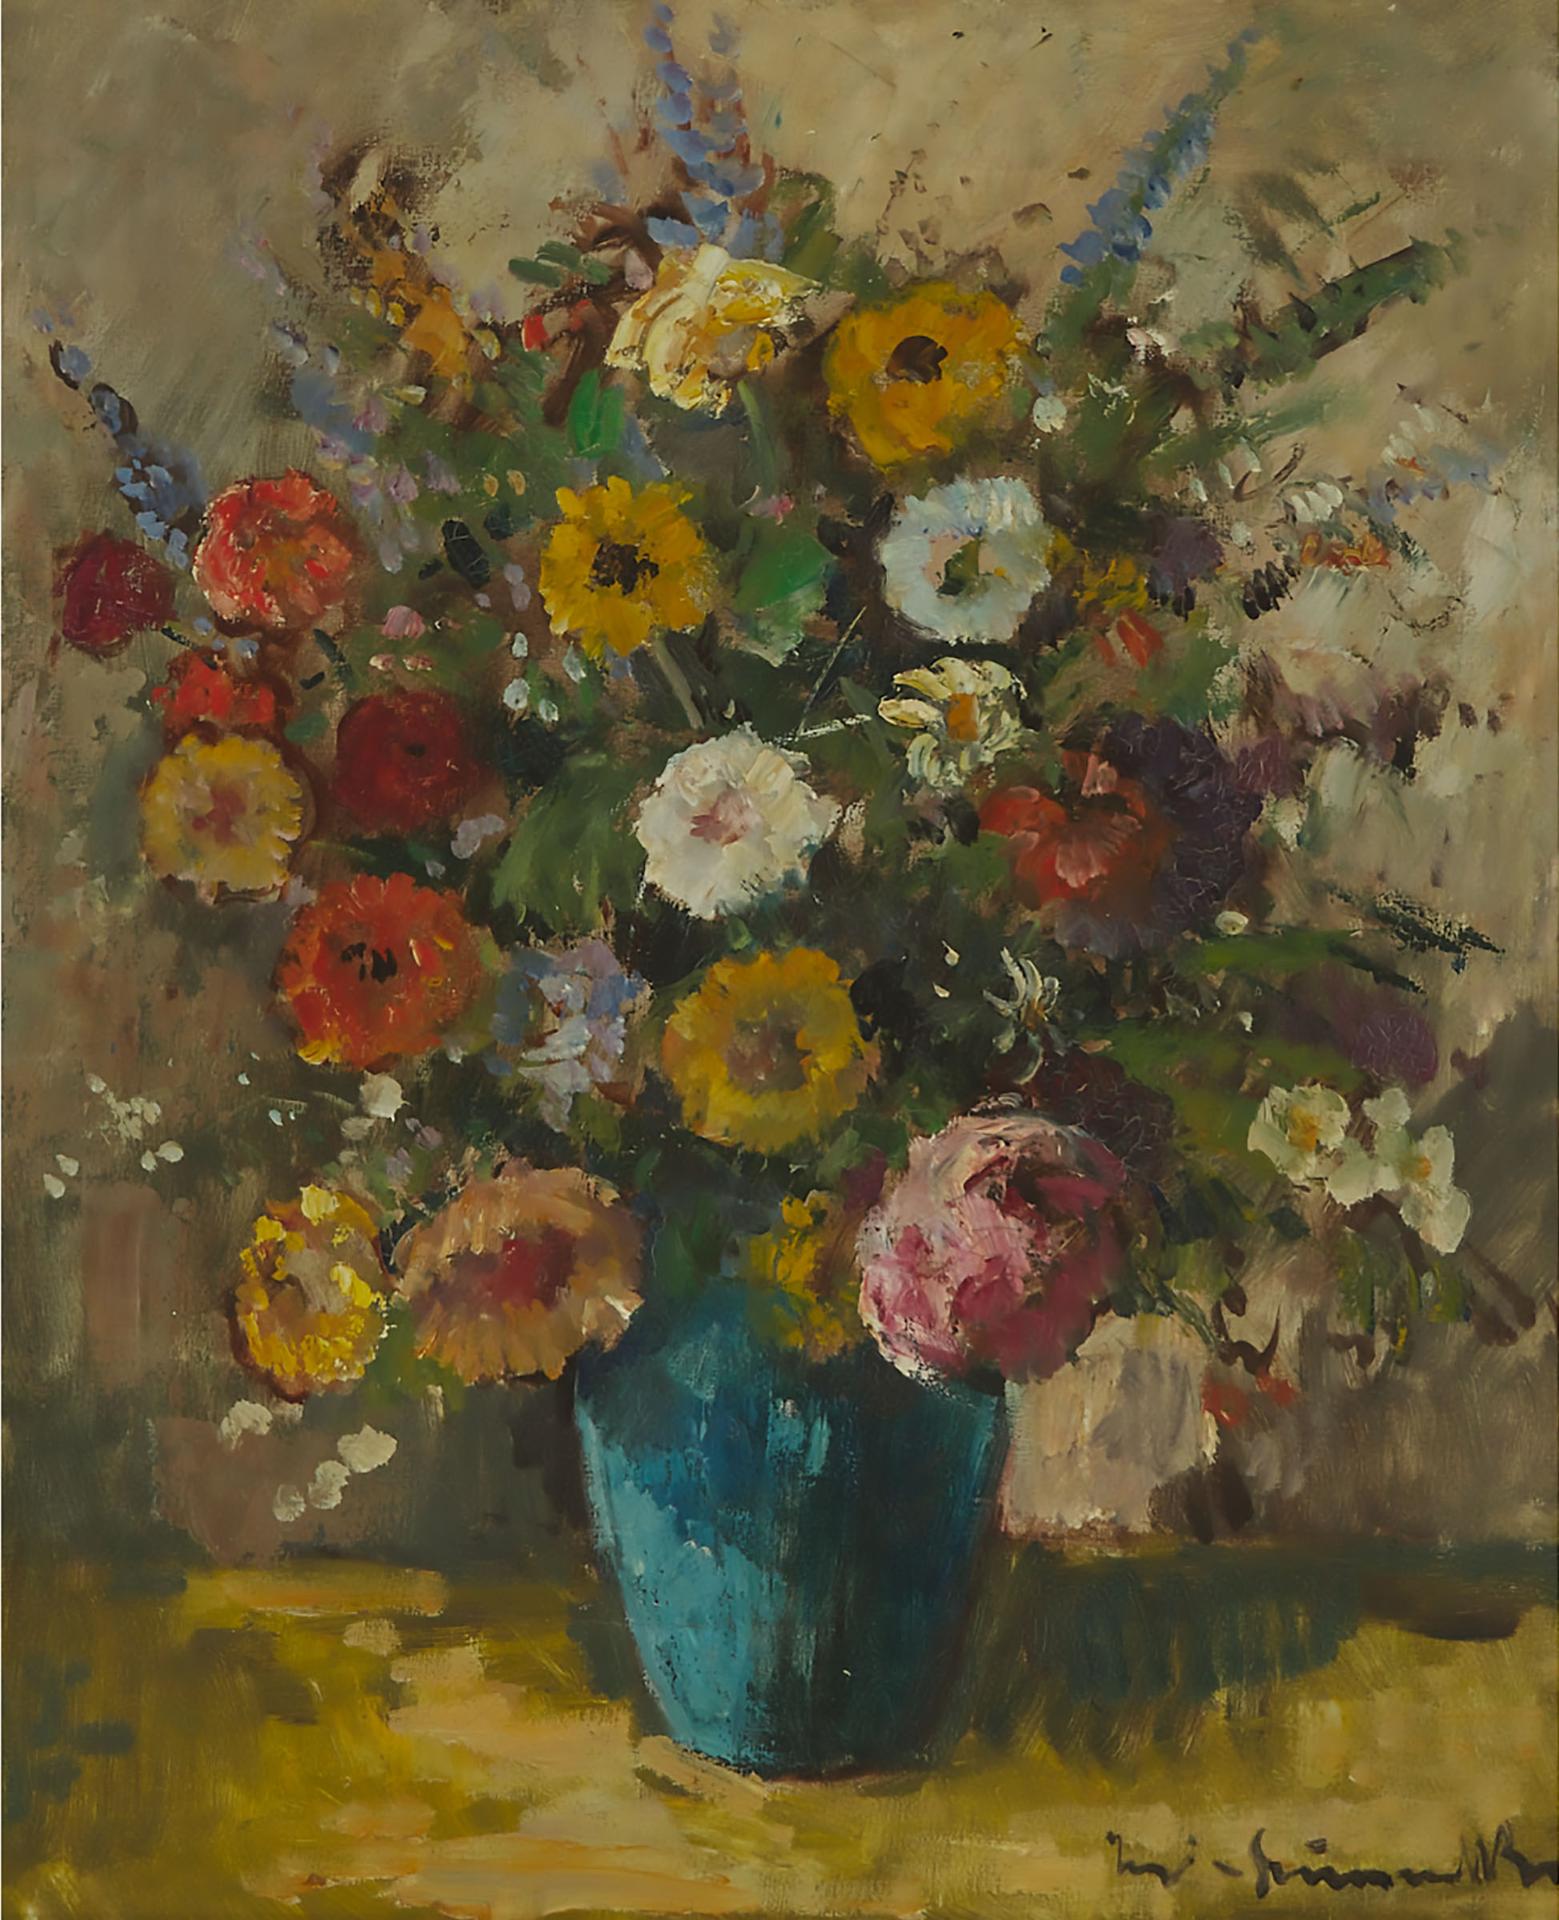 Bela Ivanyi Grunwald (1867-1940) - Flowers In Blue Vase